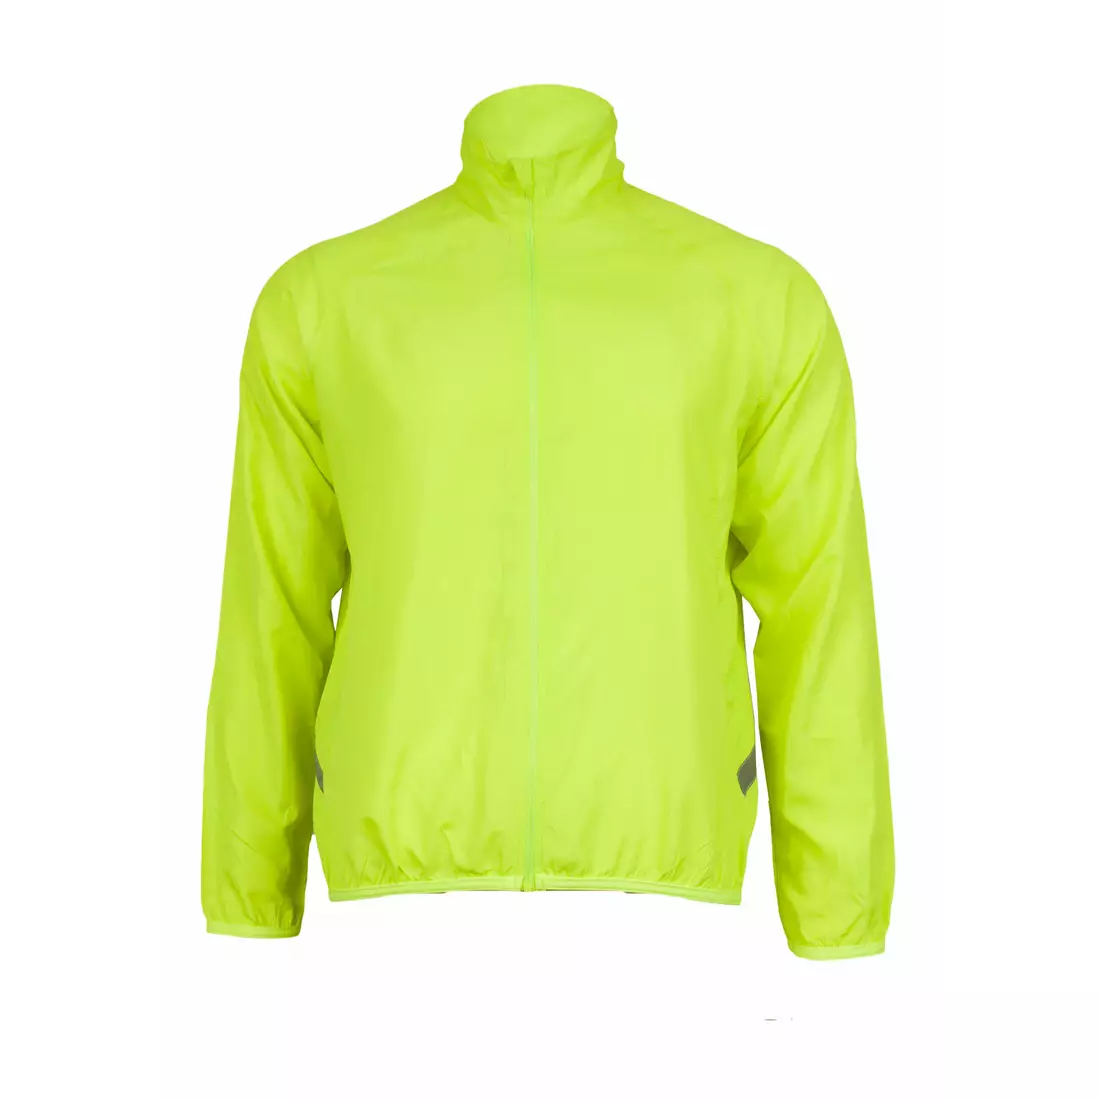 DEKO SOFT men's, lightweight bicycle windbreaker, fluorine yellow